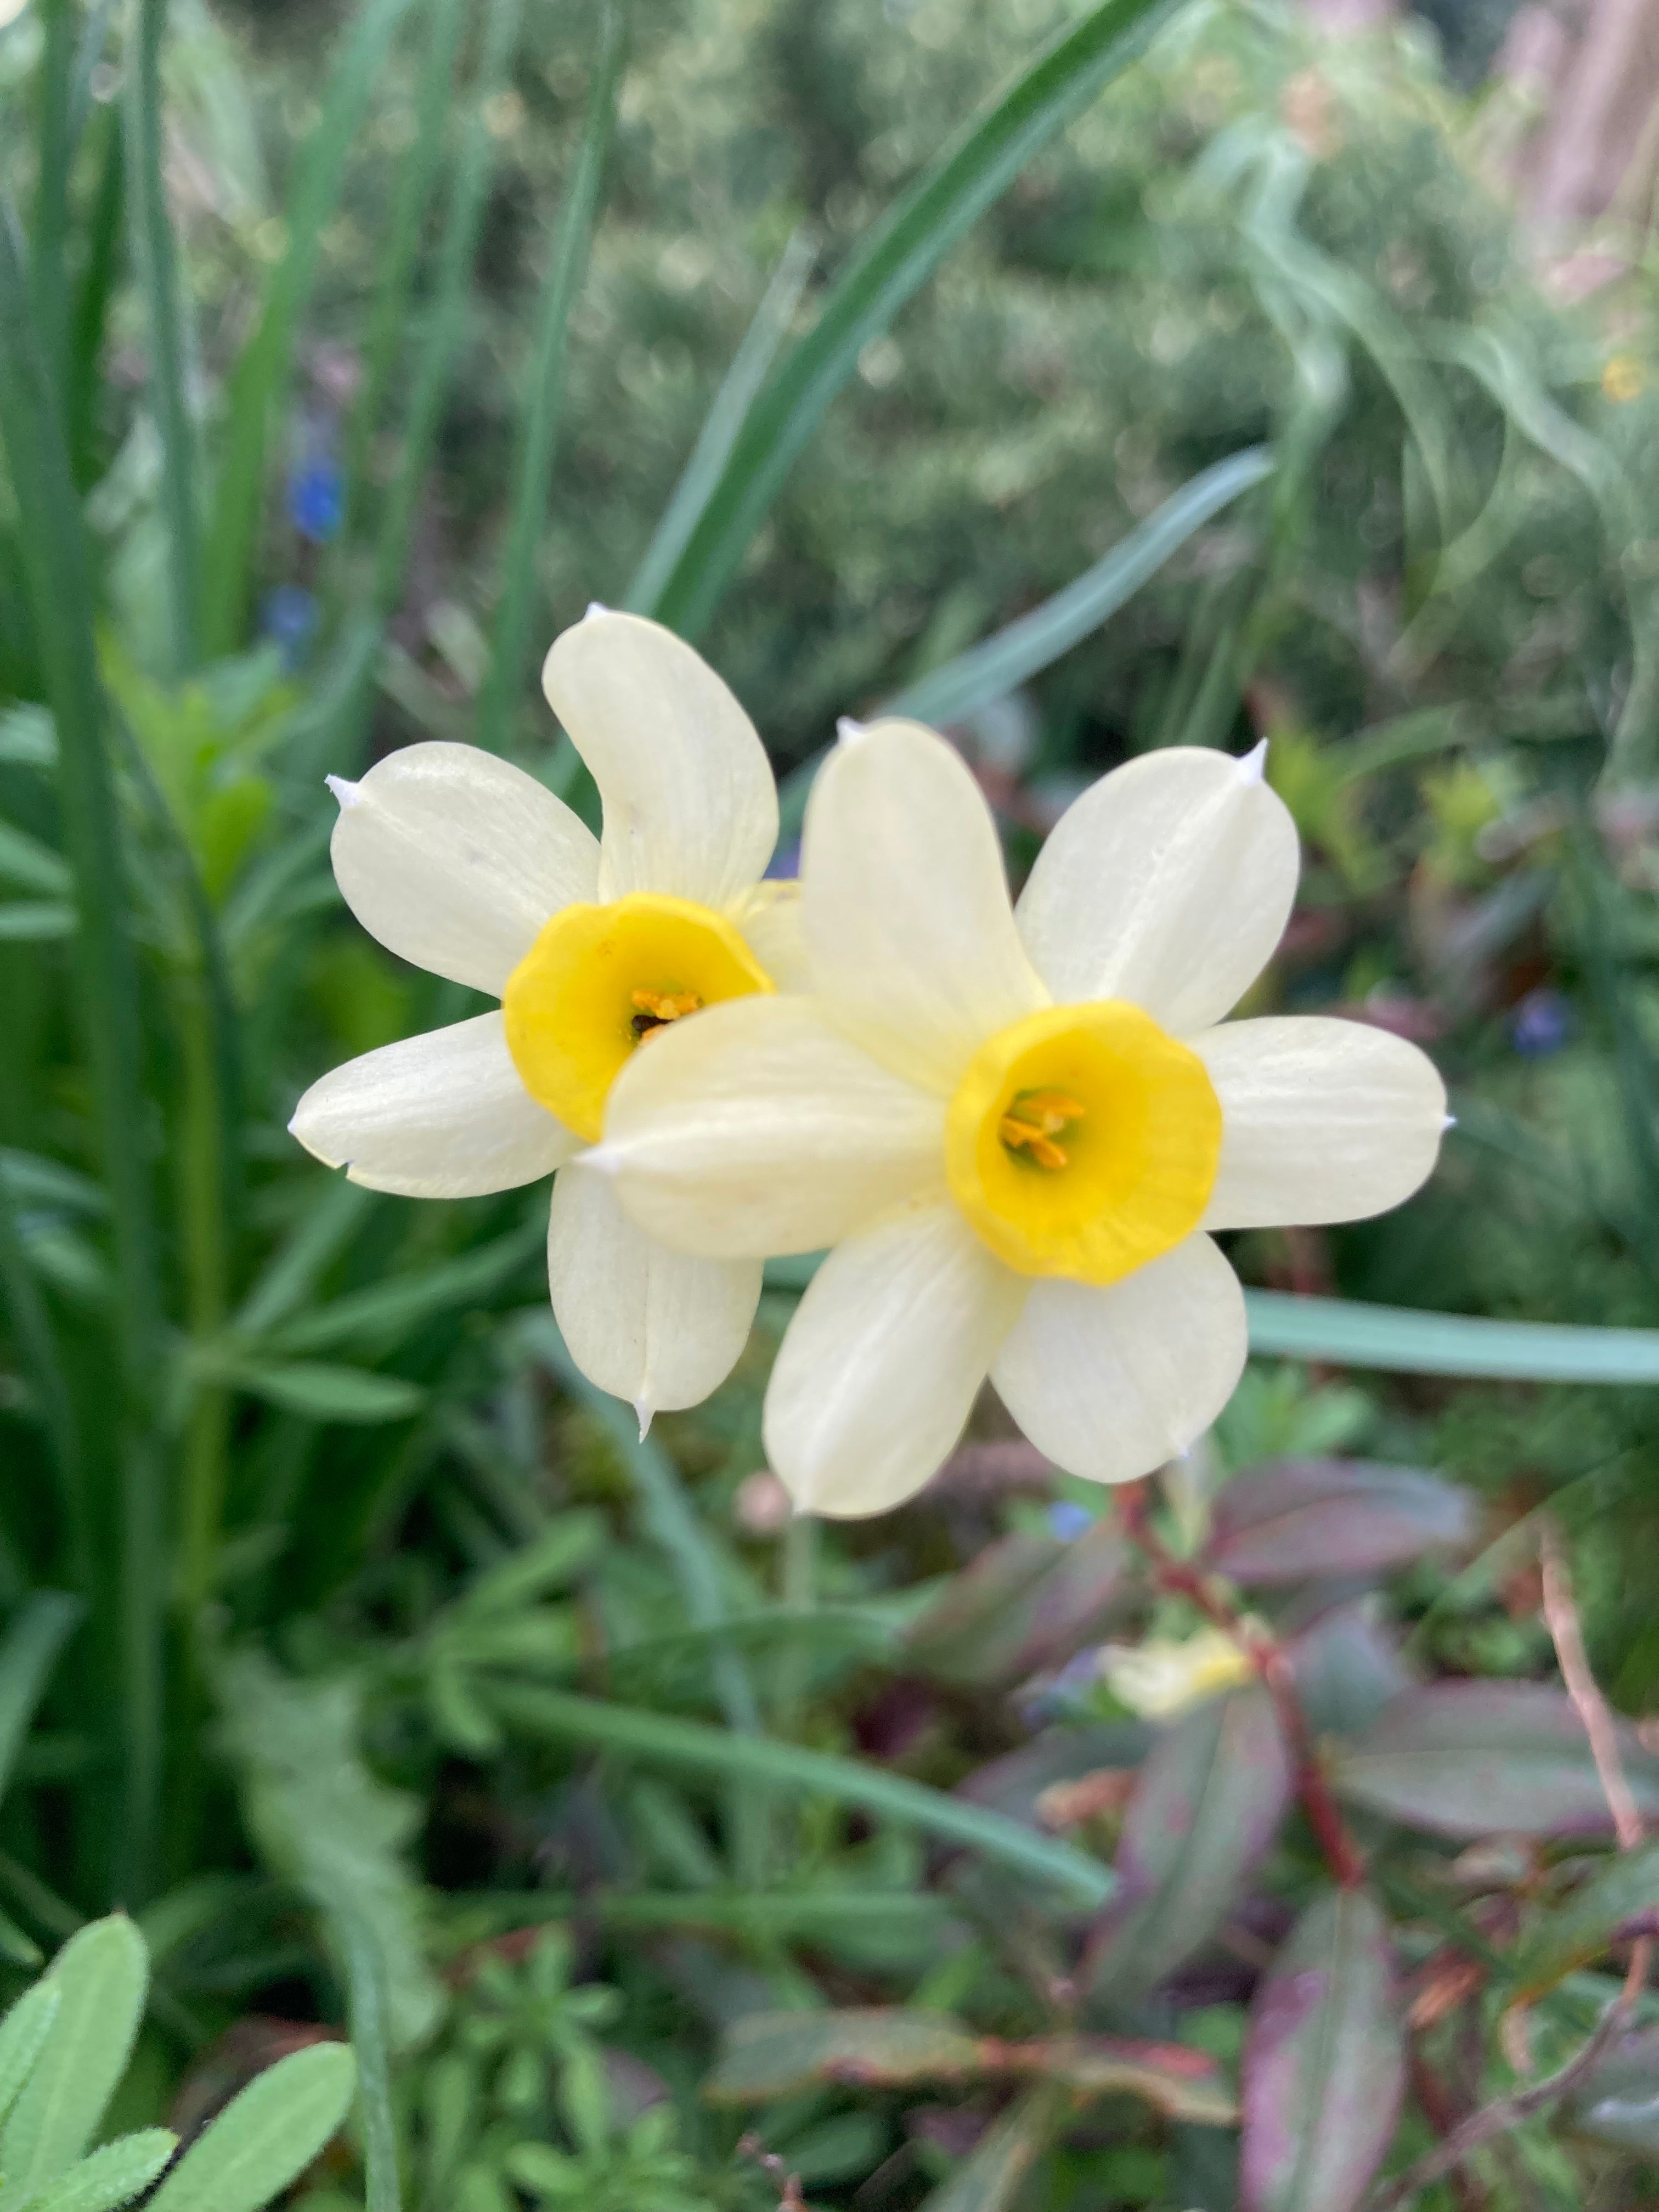 10 Dwarf Daffodil 'Minnow' Bulbs (Narcissus) Free UK Postage